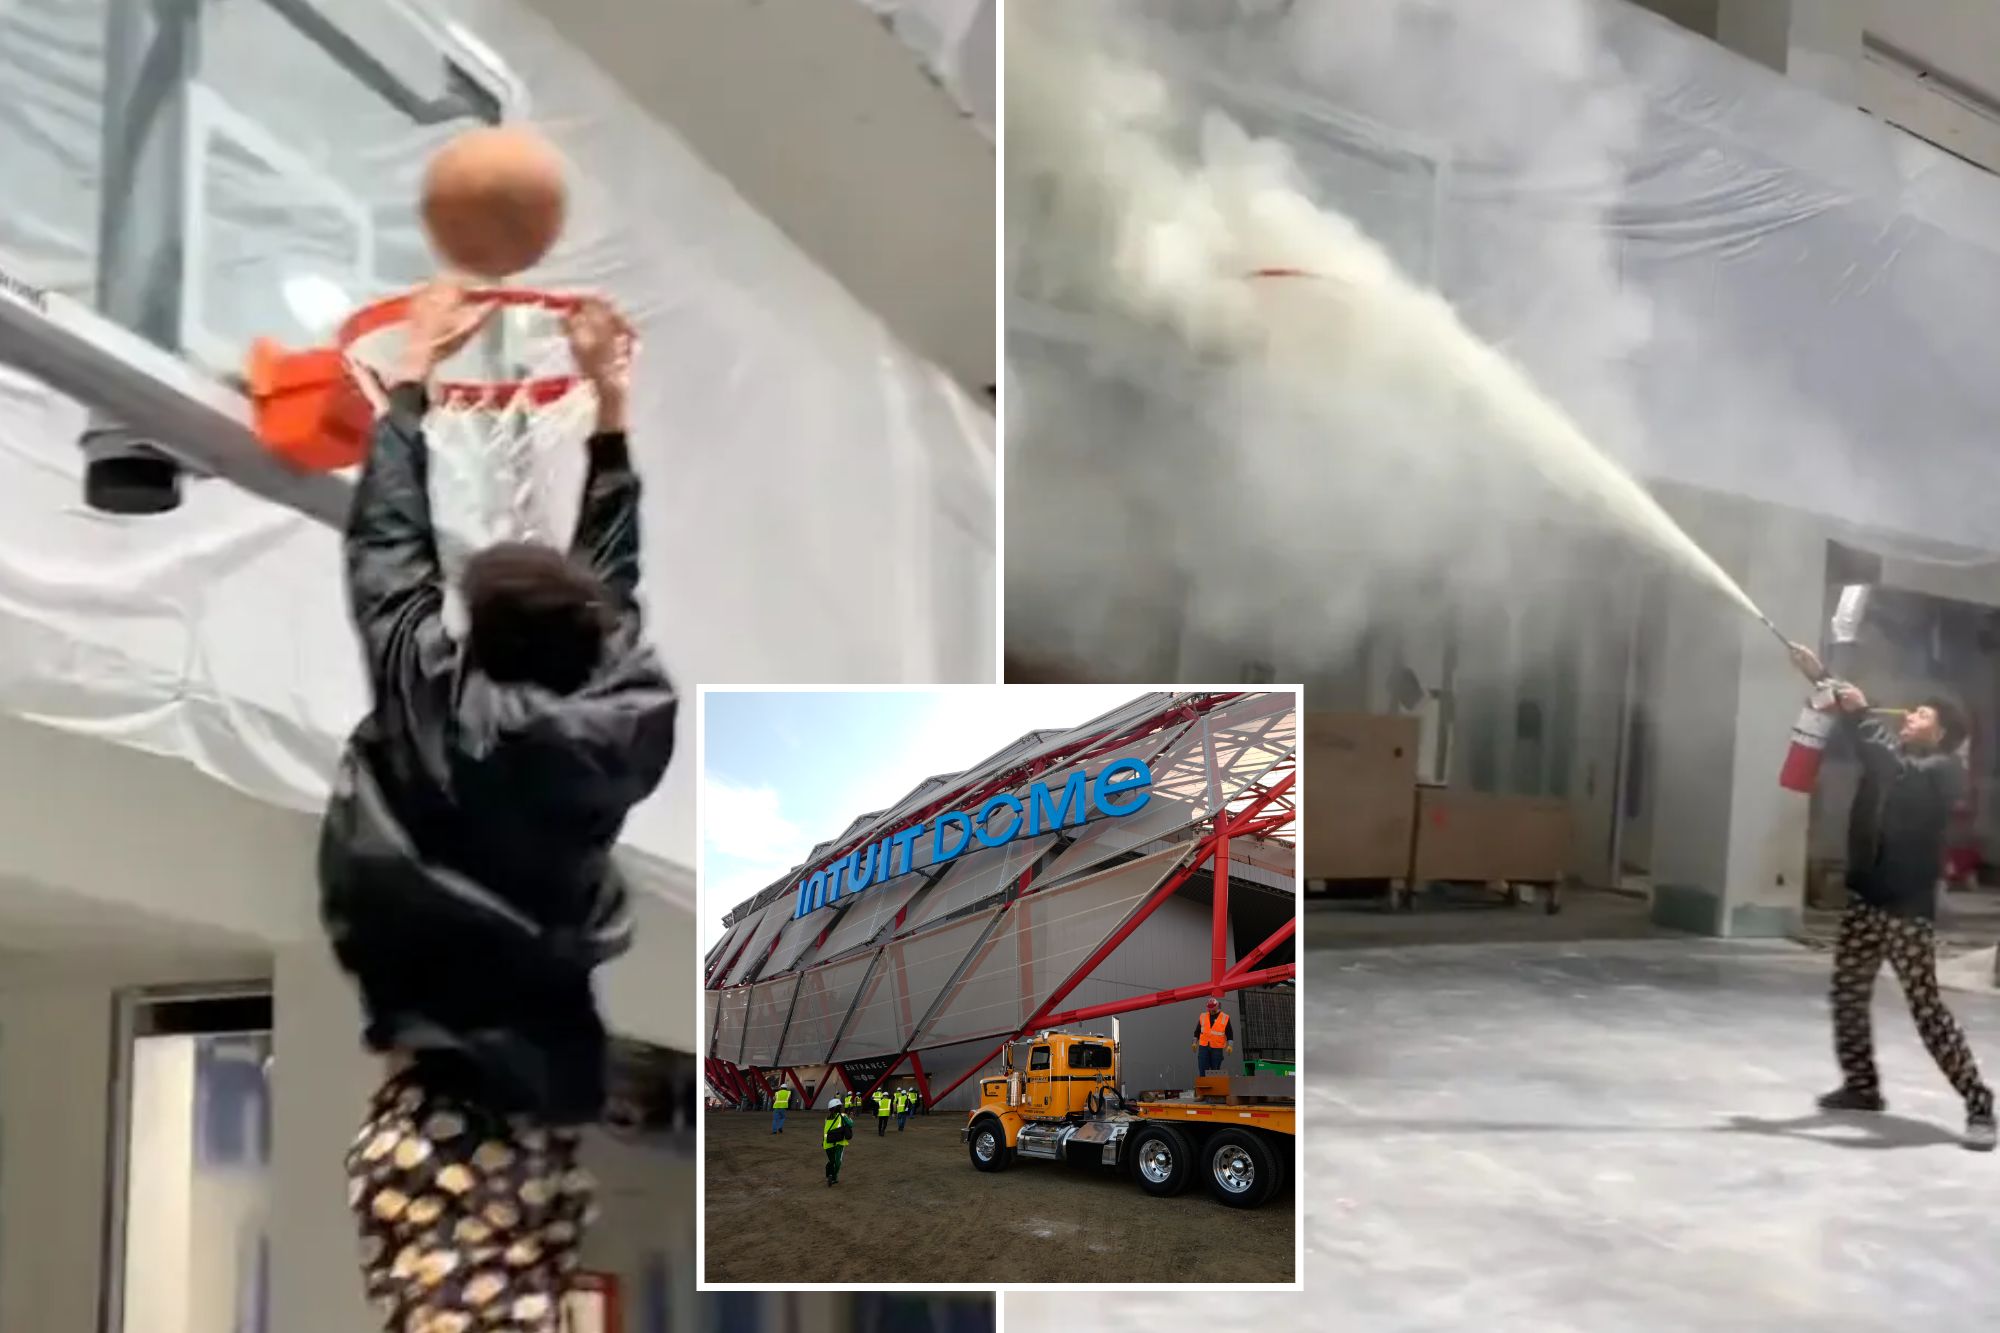 Teens break into NBA team's new $2B arena, wreak havoc in TikTok video: 'Posting this is crazy'